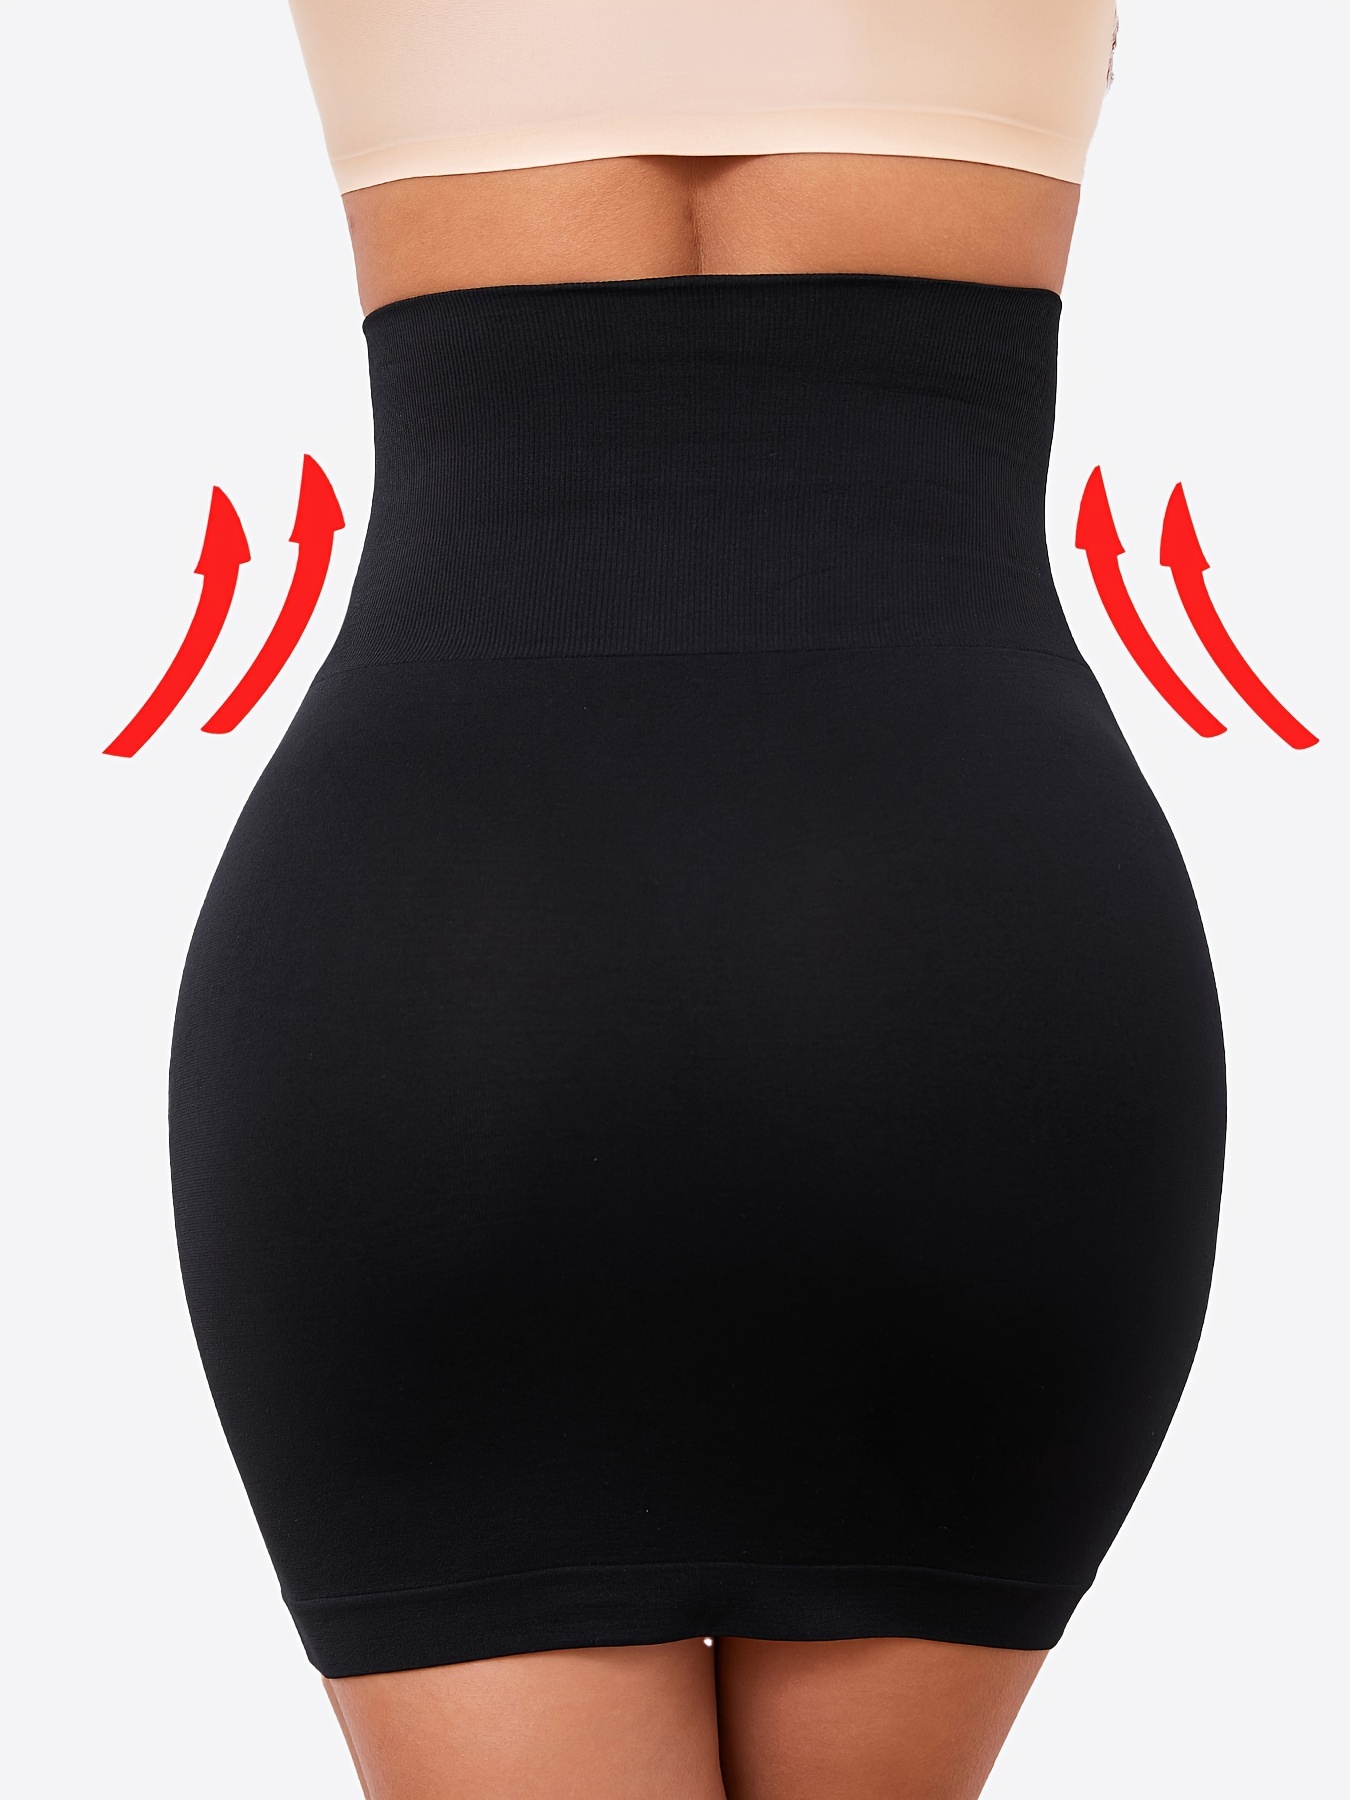 Womens High Waist Seamless Half Slips Skirt Body Shaper High Waist